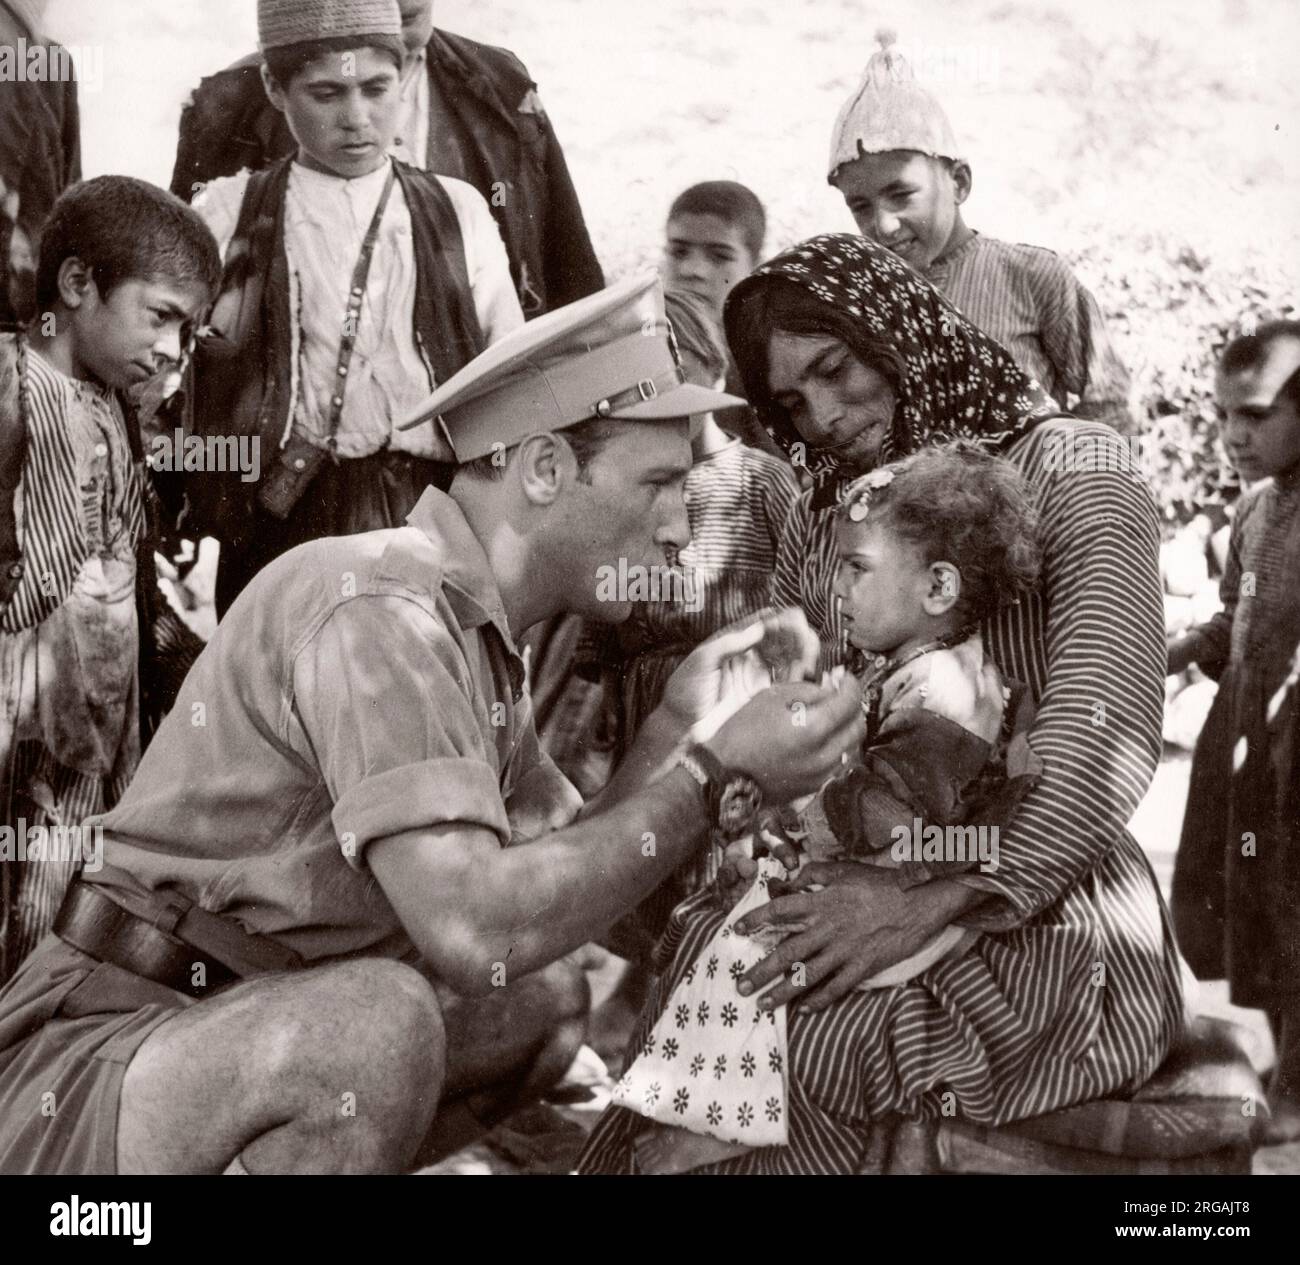 1943 Syrie - le bureau militaire britannique traite le peuple kurde le long de la frontière avec la Turquie en Syrie - beaucoup souffrent de Trachoma Photographie par un officier de recrutement de l'armée britannique stationnés en Afrique de l'est et au Moyen-Orient pendant la Seconde Guerre mondiale Banque D'Images